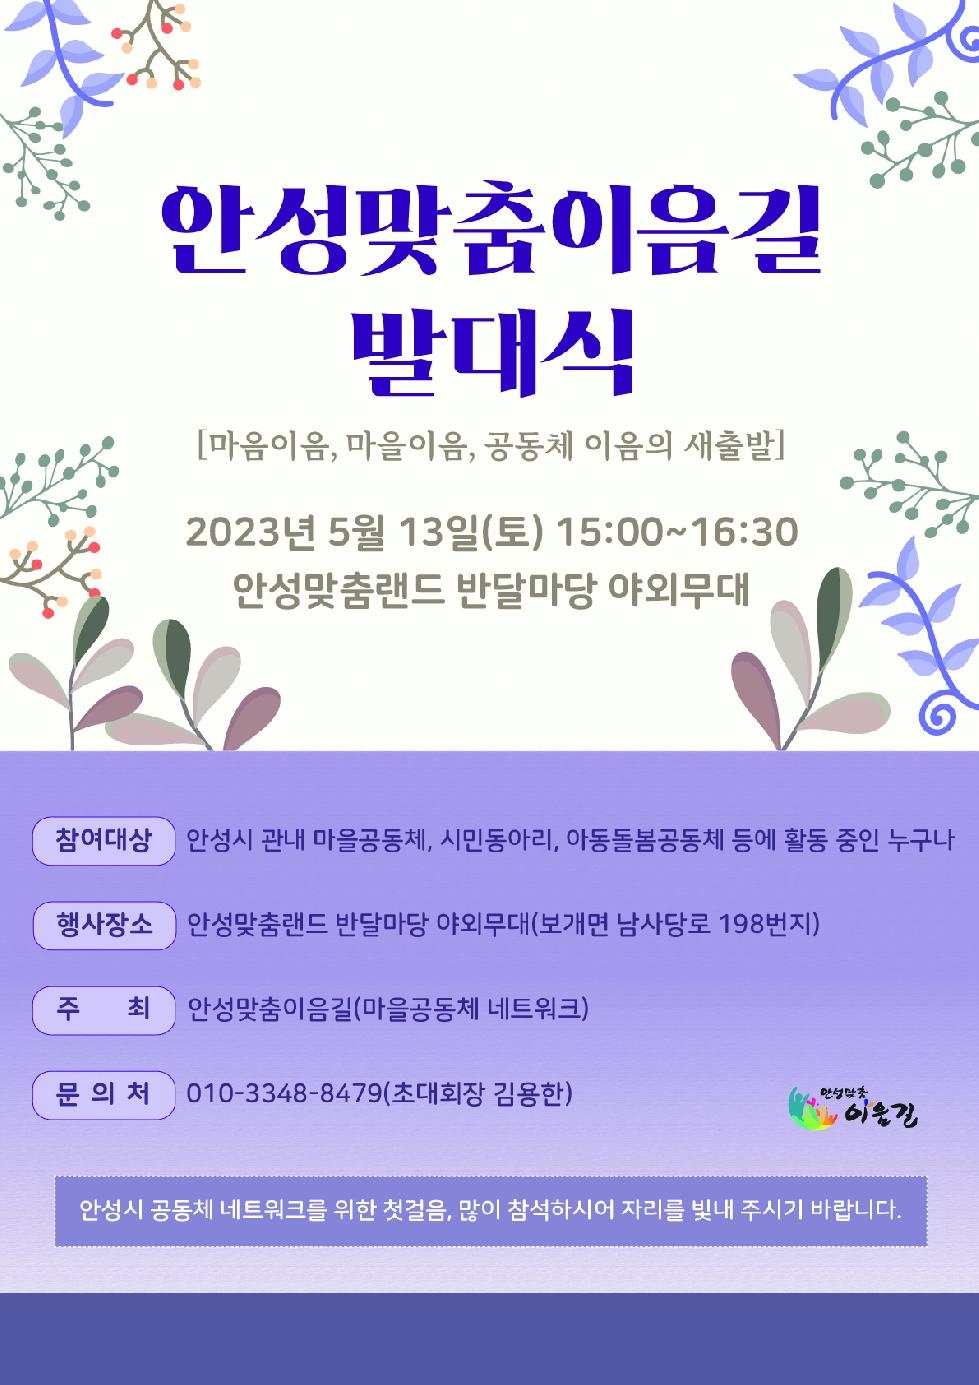 안성맞춤 이음길 발대식 개최  “마음이음, 마을이음, 공동체 이음의 새출